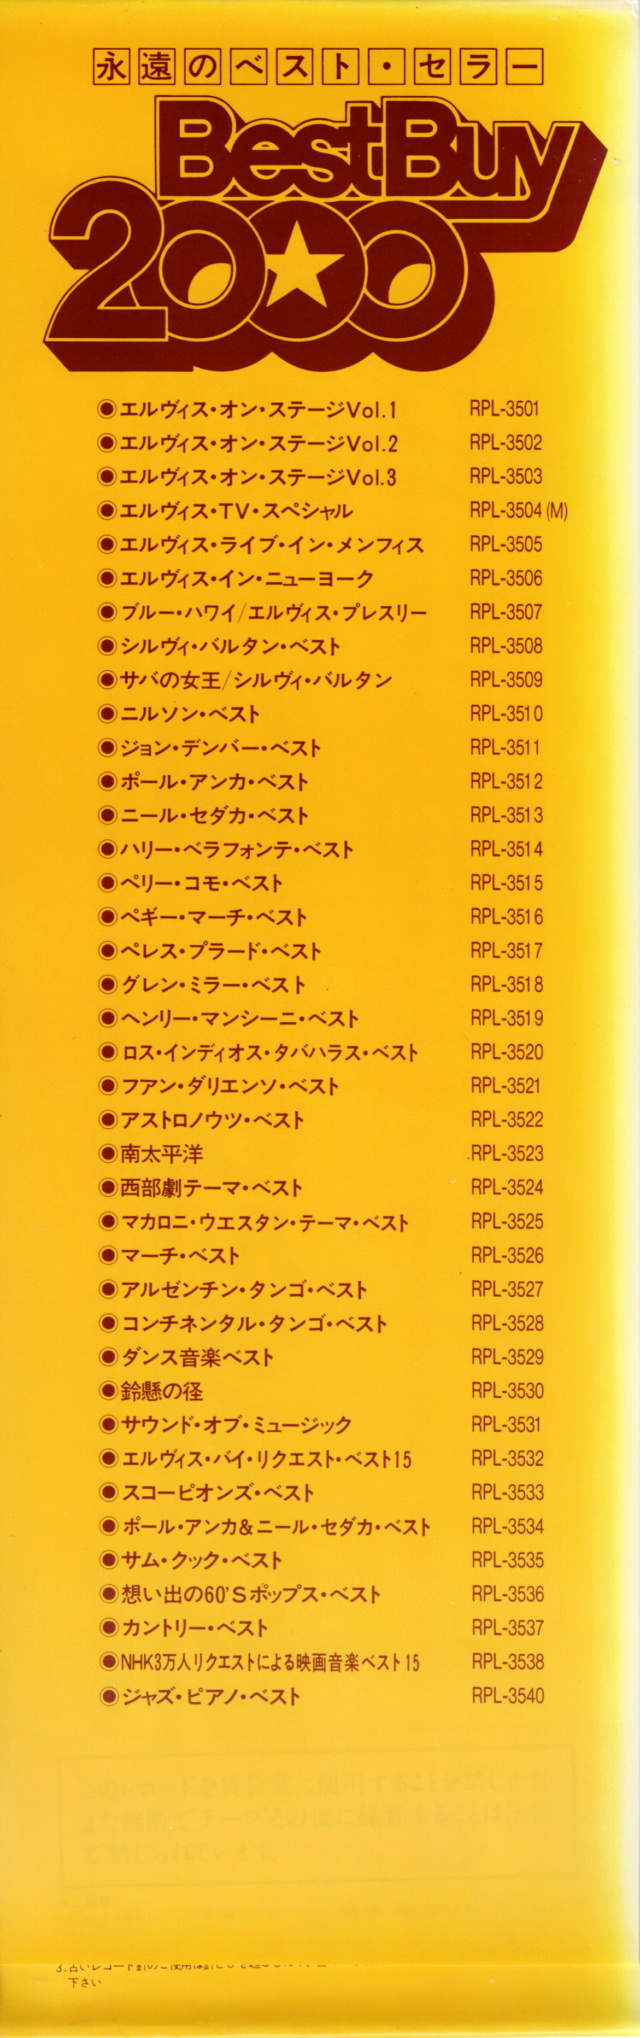 Discographie Japonaise - 4ème partie (33 T COMPILATION) - Page 16 Jpn_rp60